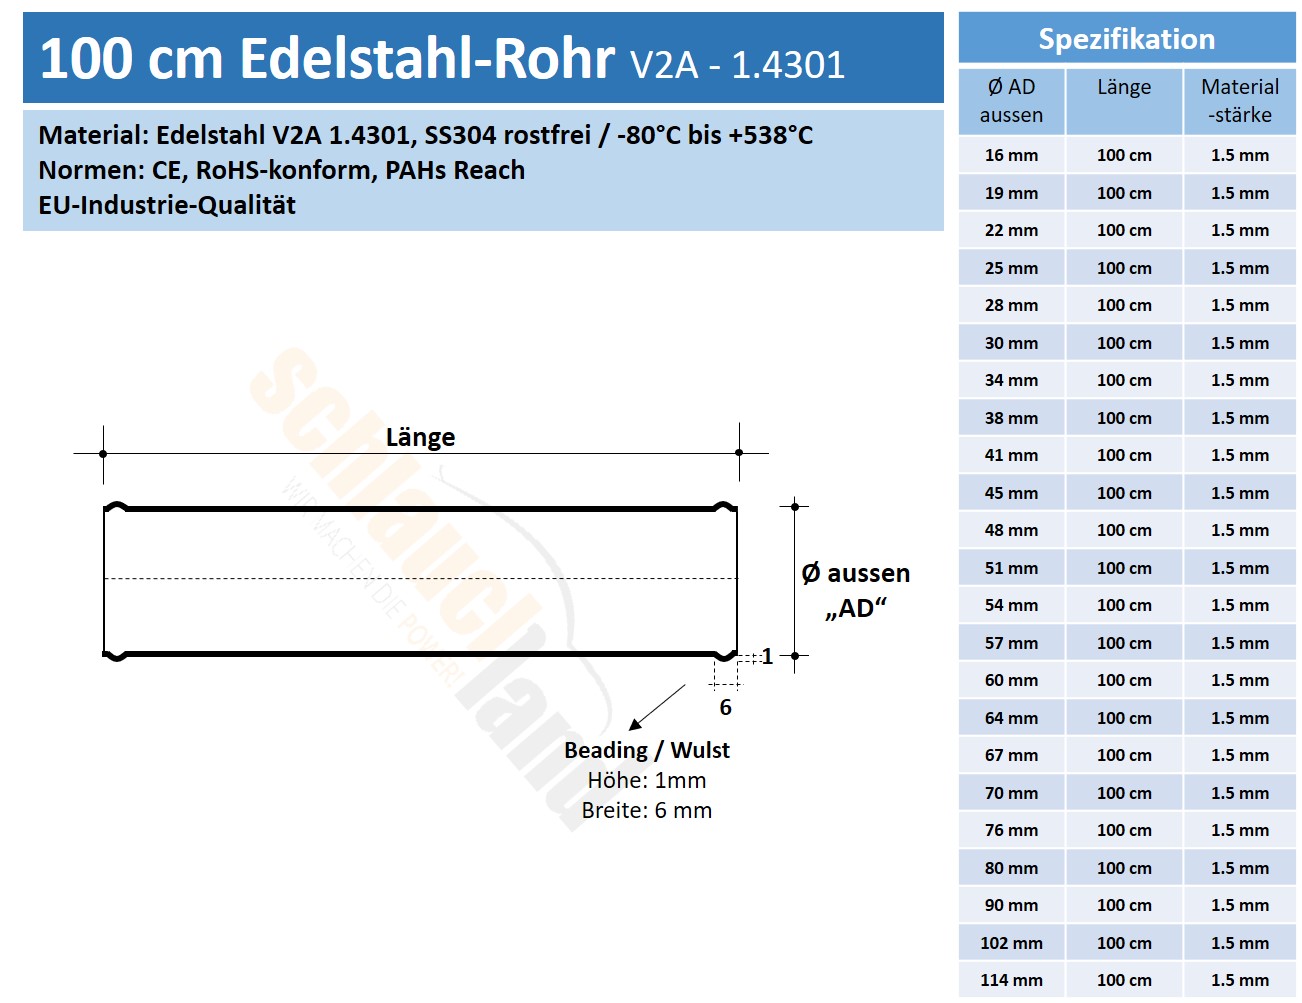 Datenblatt Edelstahl-Rohr 100cm V2A